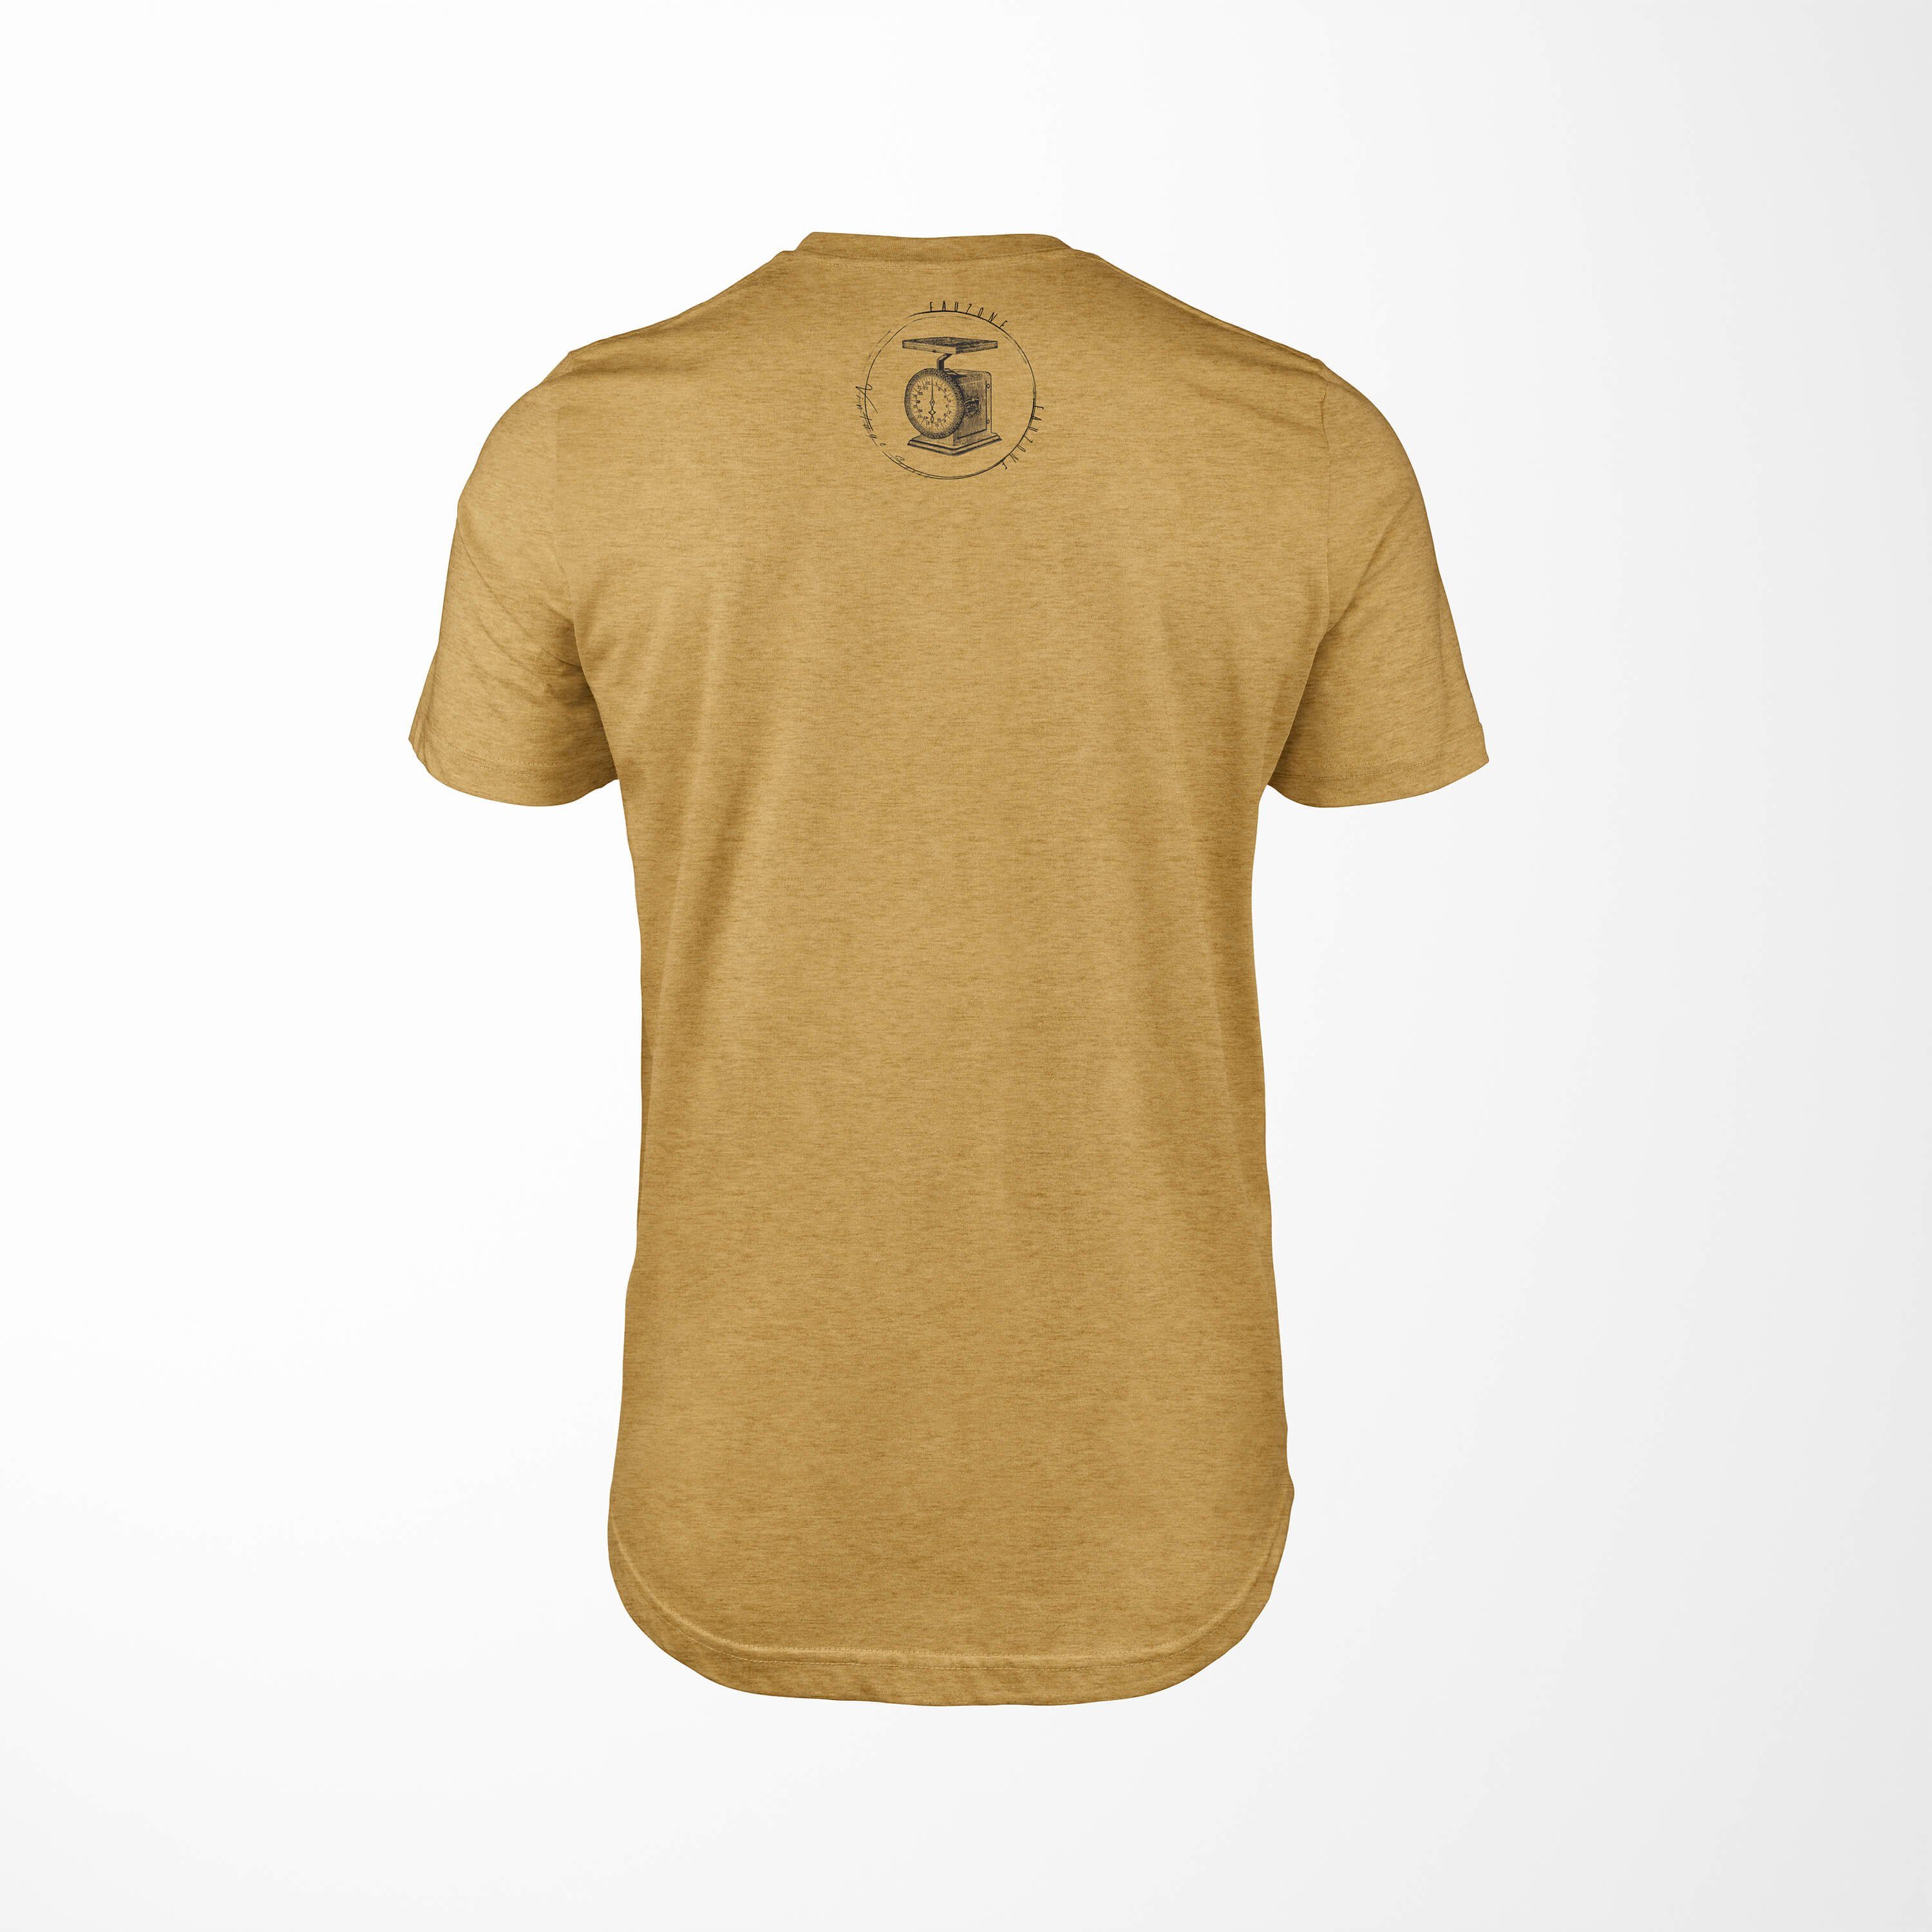 Sinus Art T-Shirt Vintage Herren T-Shirt Gold Küchenwaage Antique